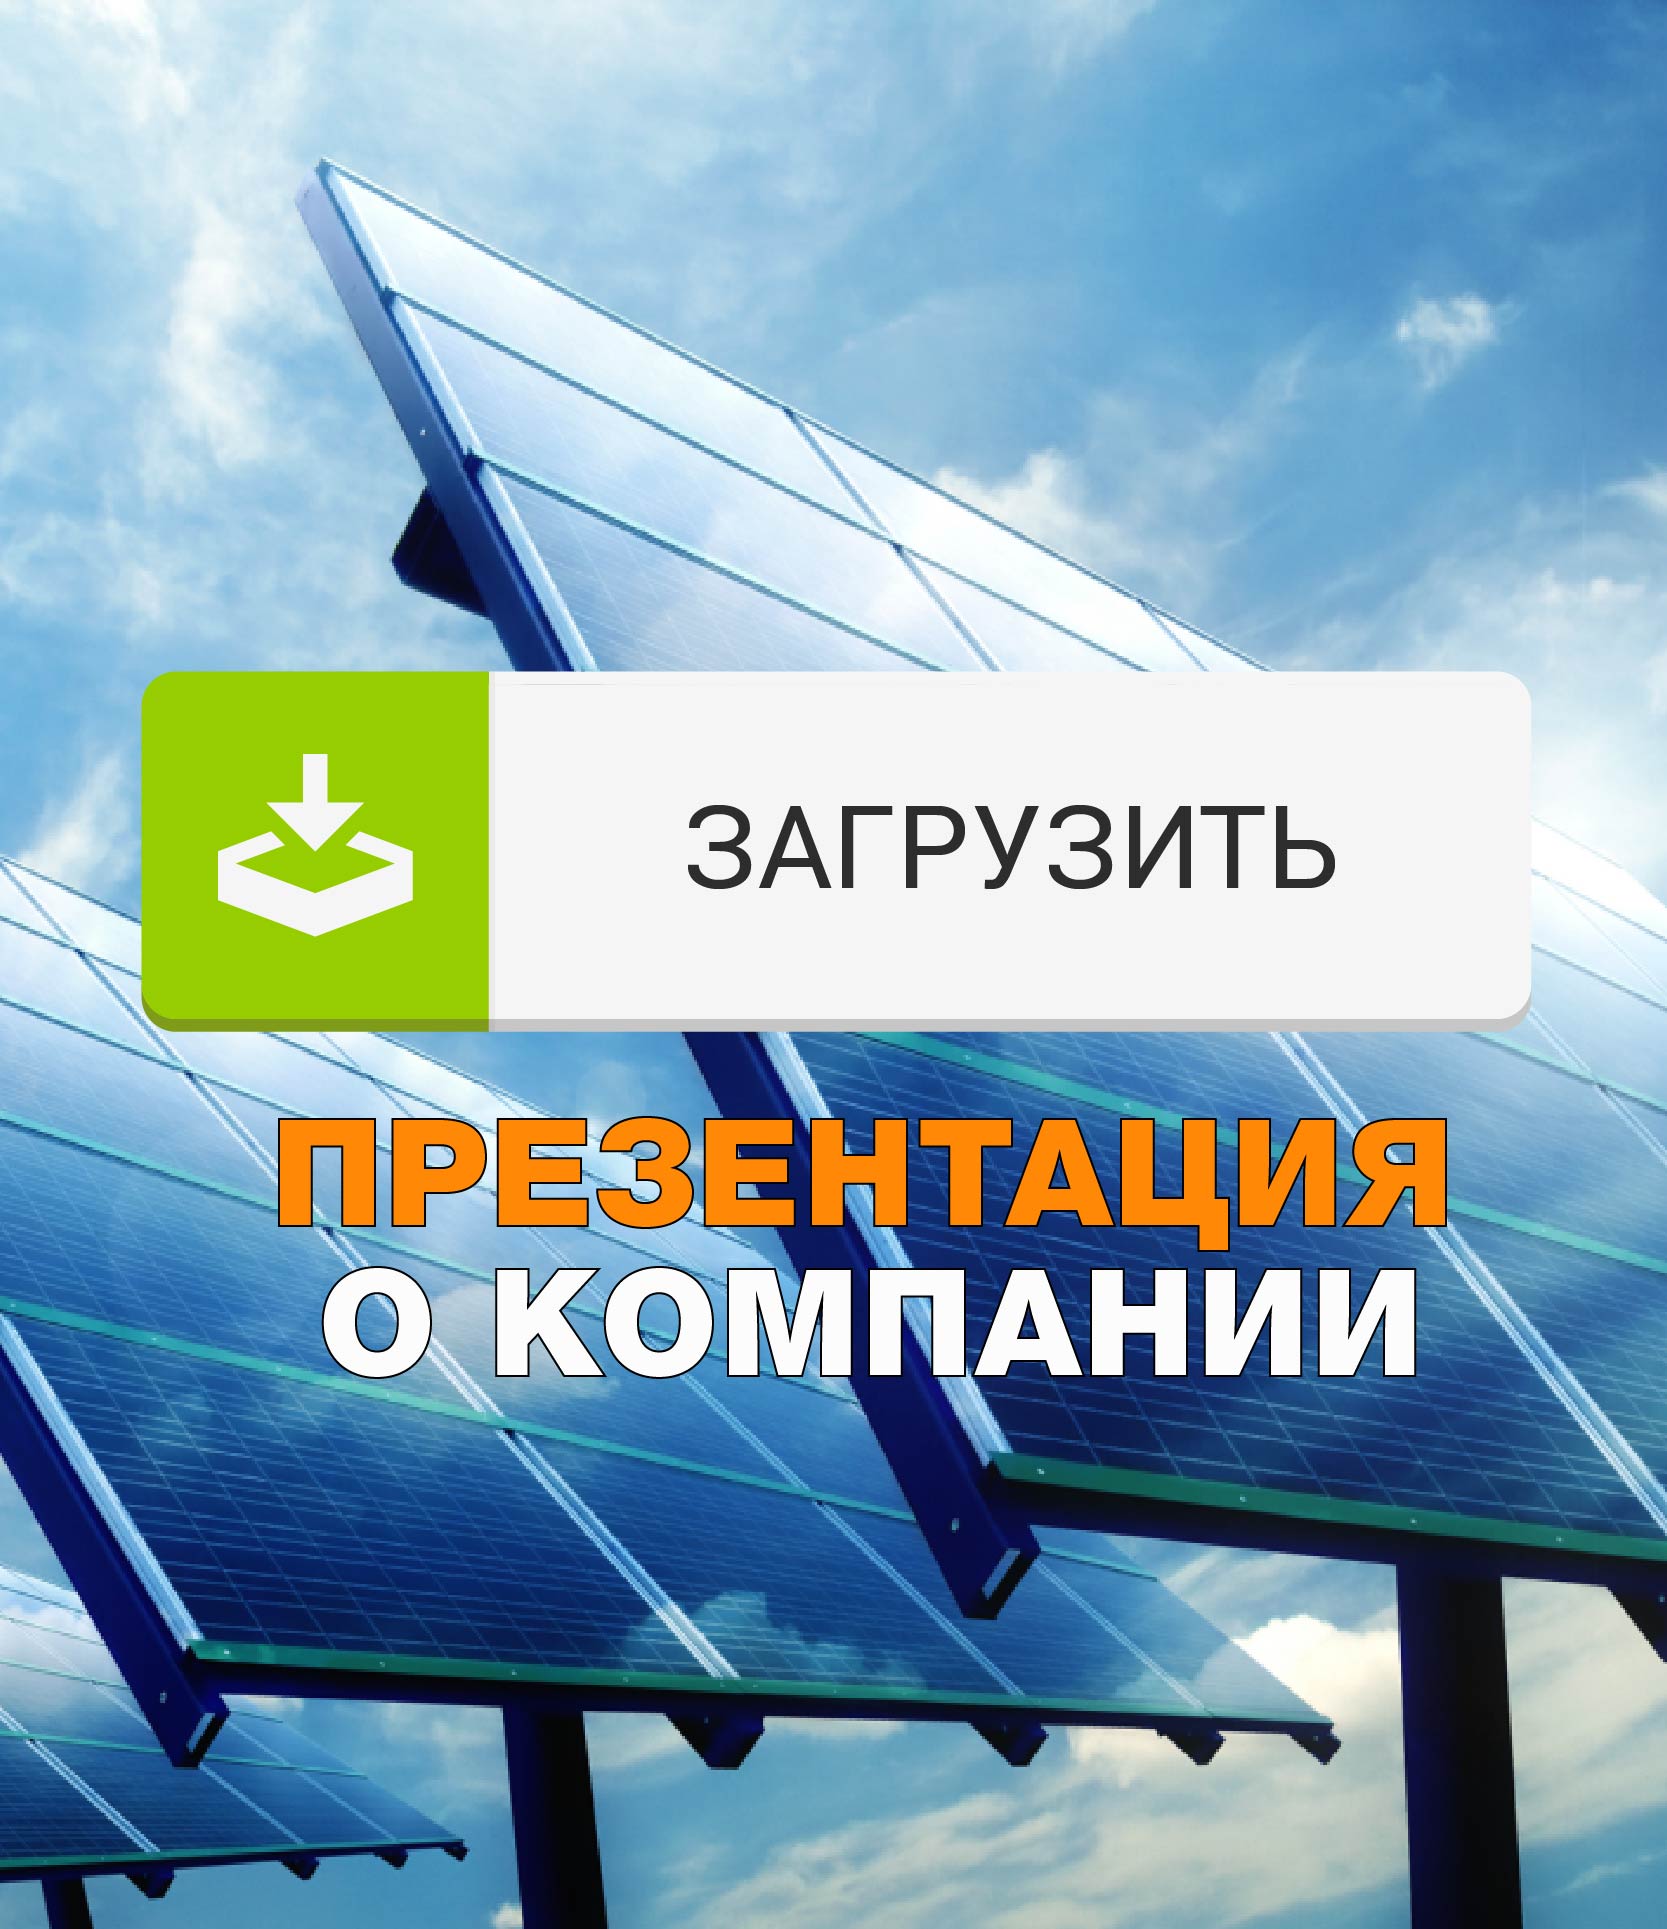 Презентация проектирования солнечной электростанции от Artenergy